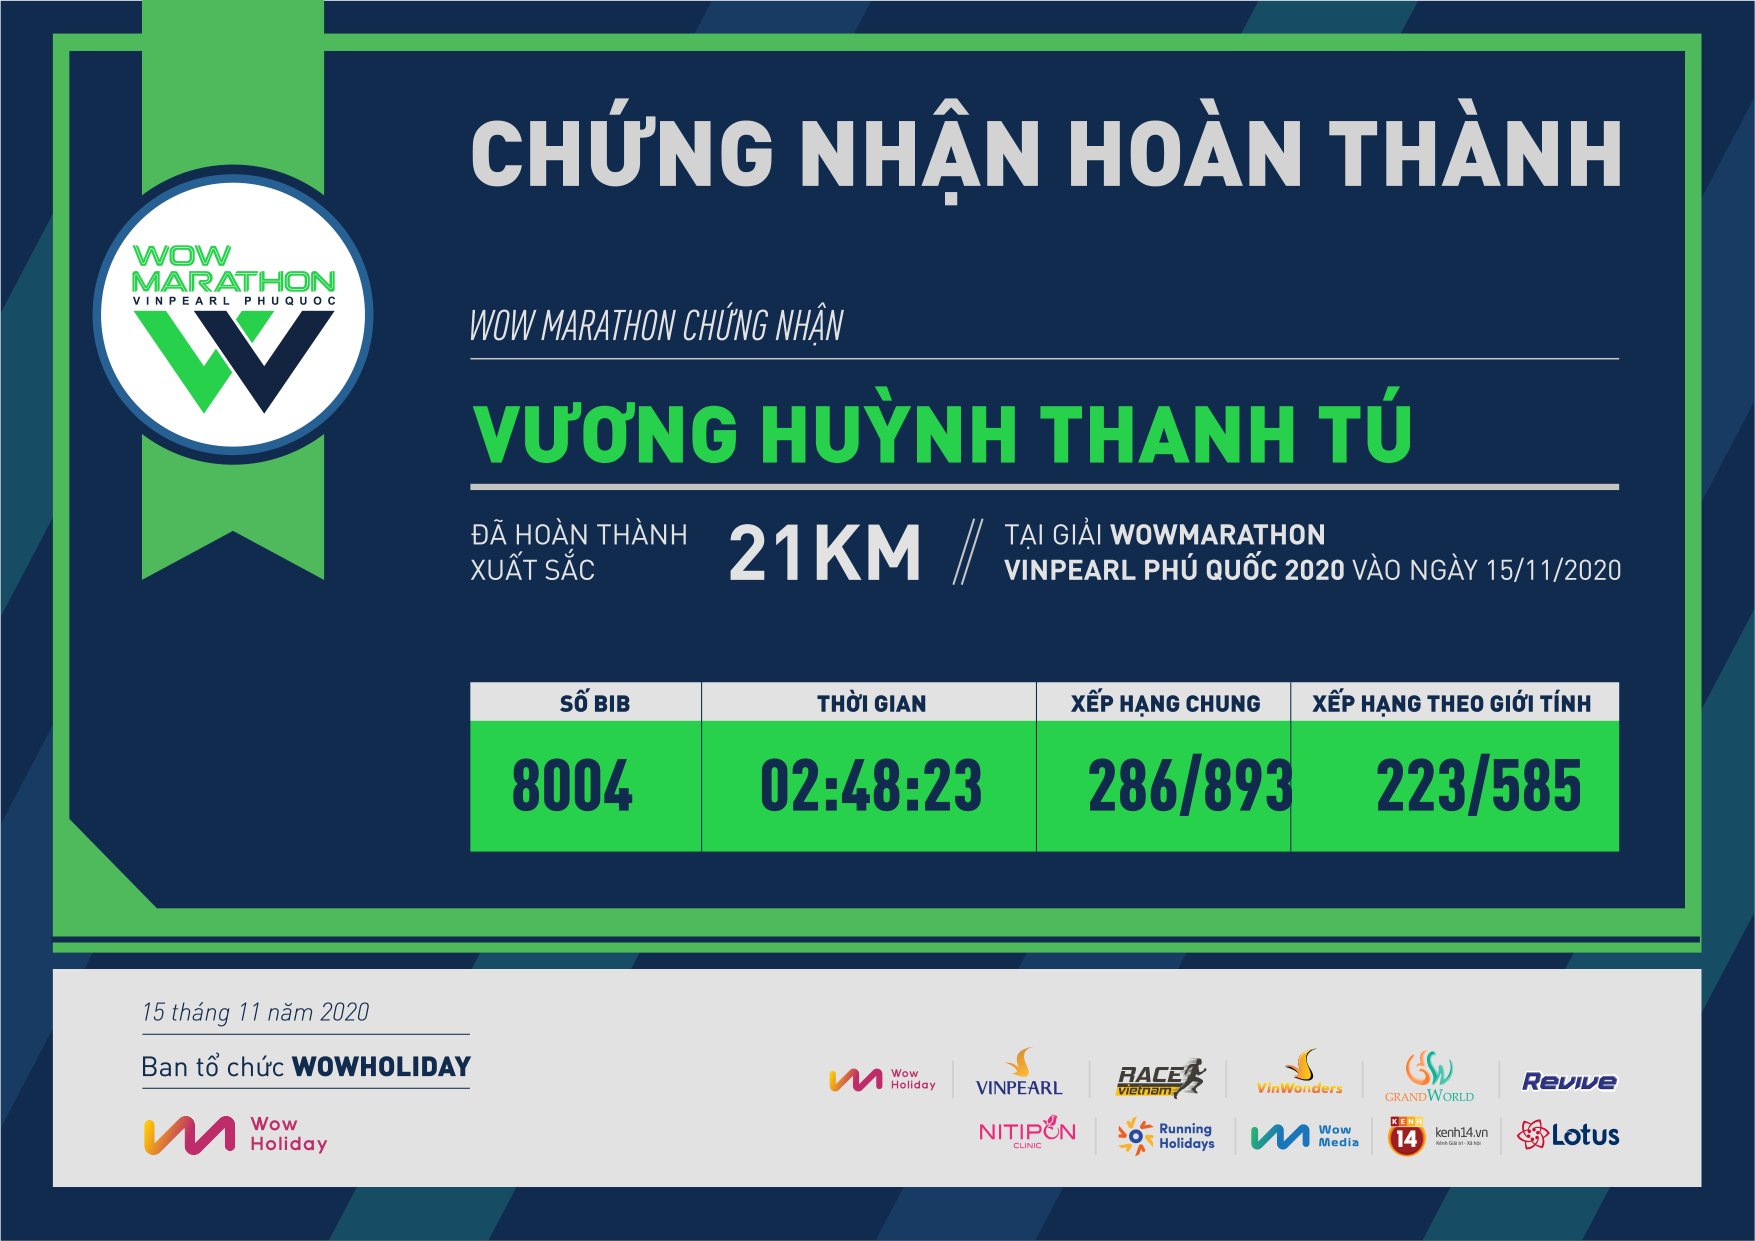 8004 - Vương Huỳnh Thanh Tú